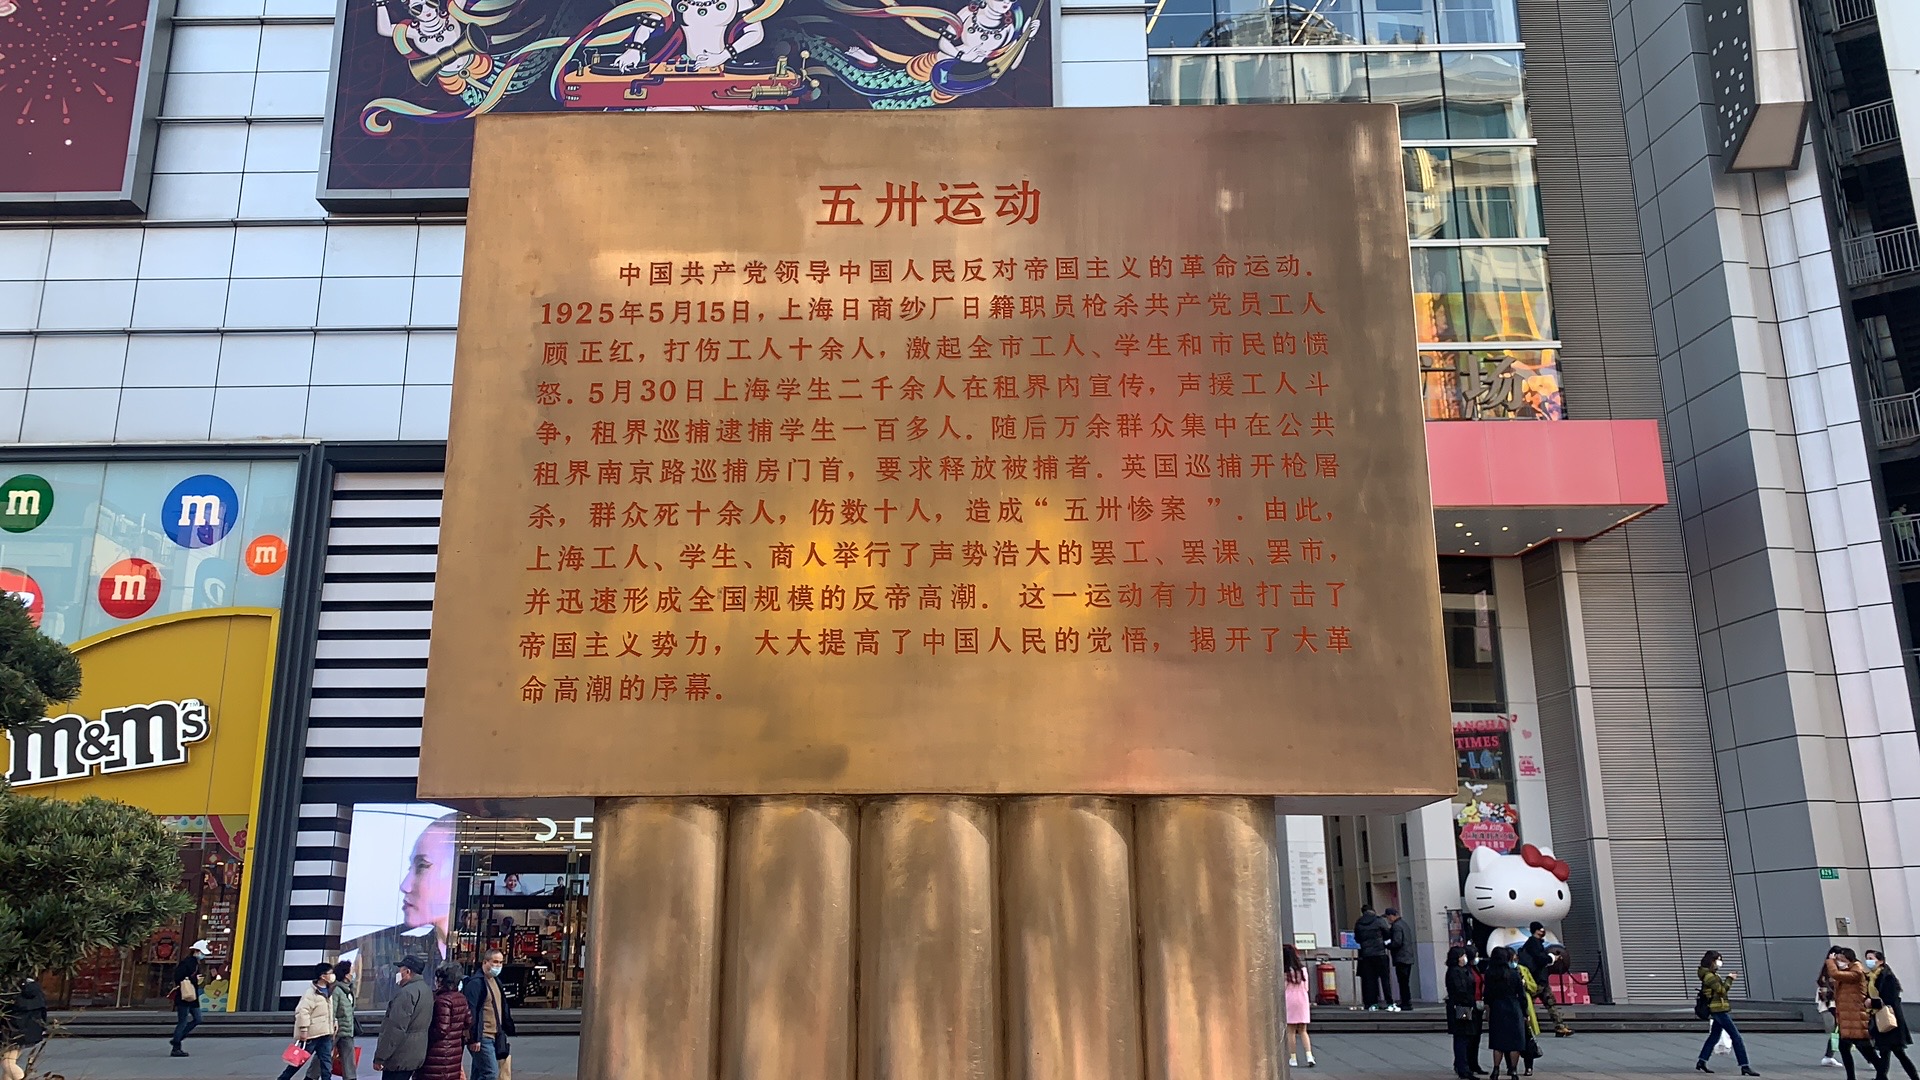 纪念碑上的文字记录了五卅运动的历史背景。澎湃新闻记者 陈斯斯 摄 